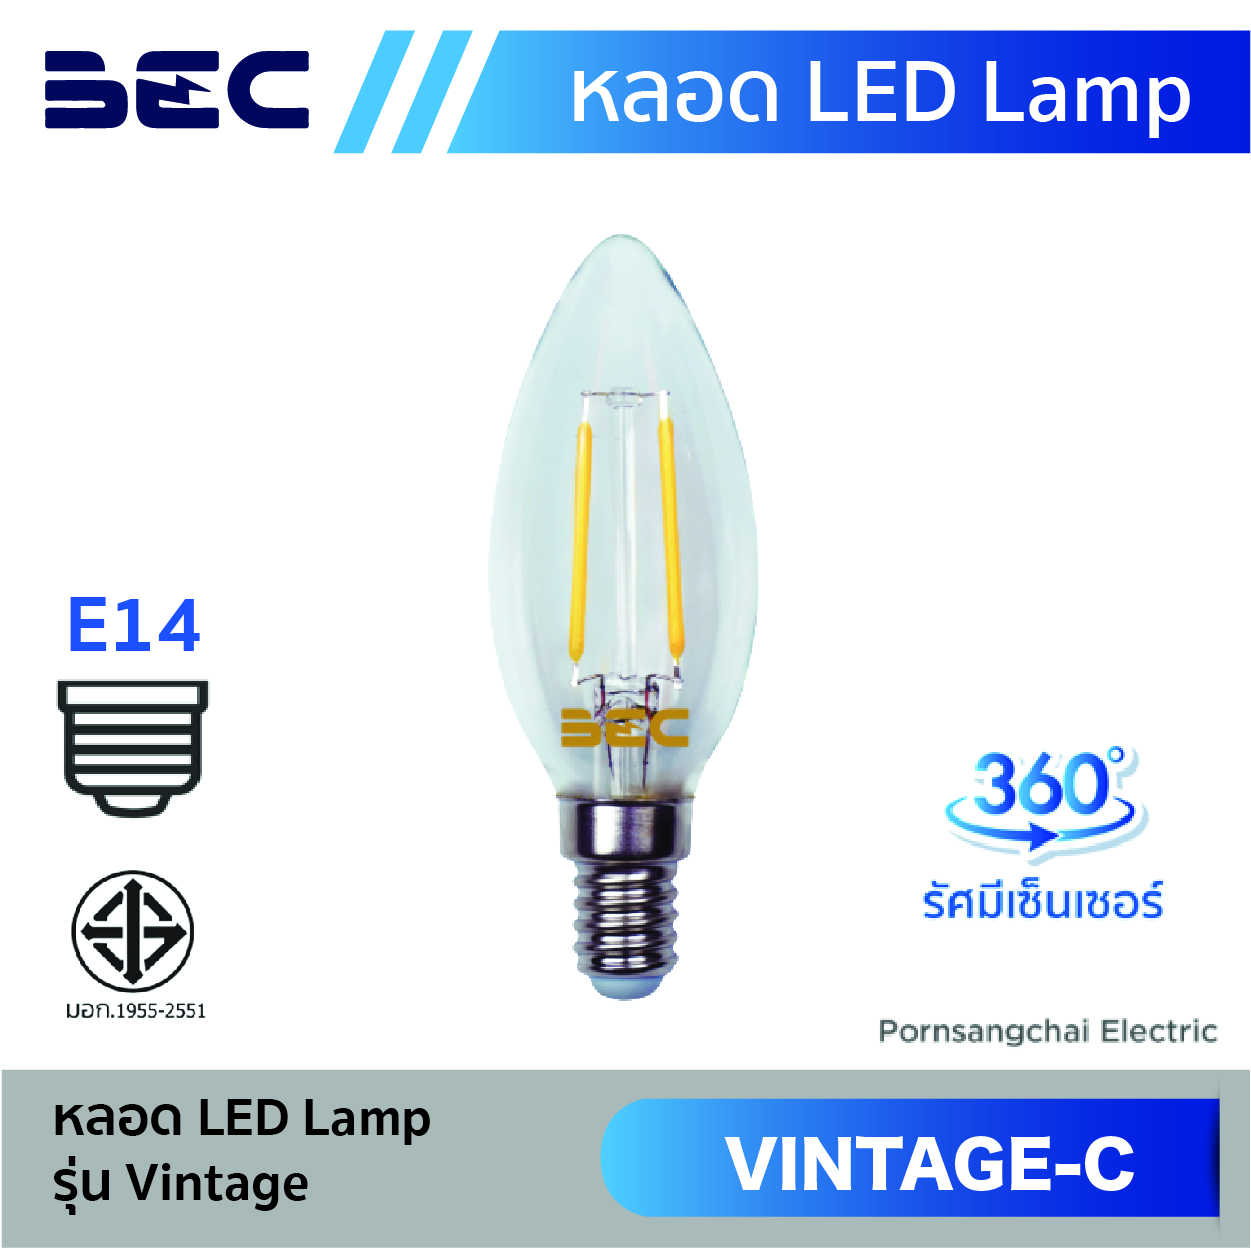 หลอดไฟ LED Lamp BEC รุ่น Vintage-C